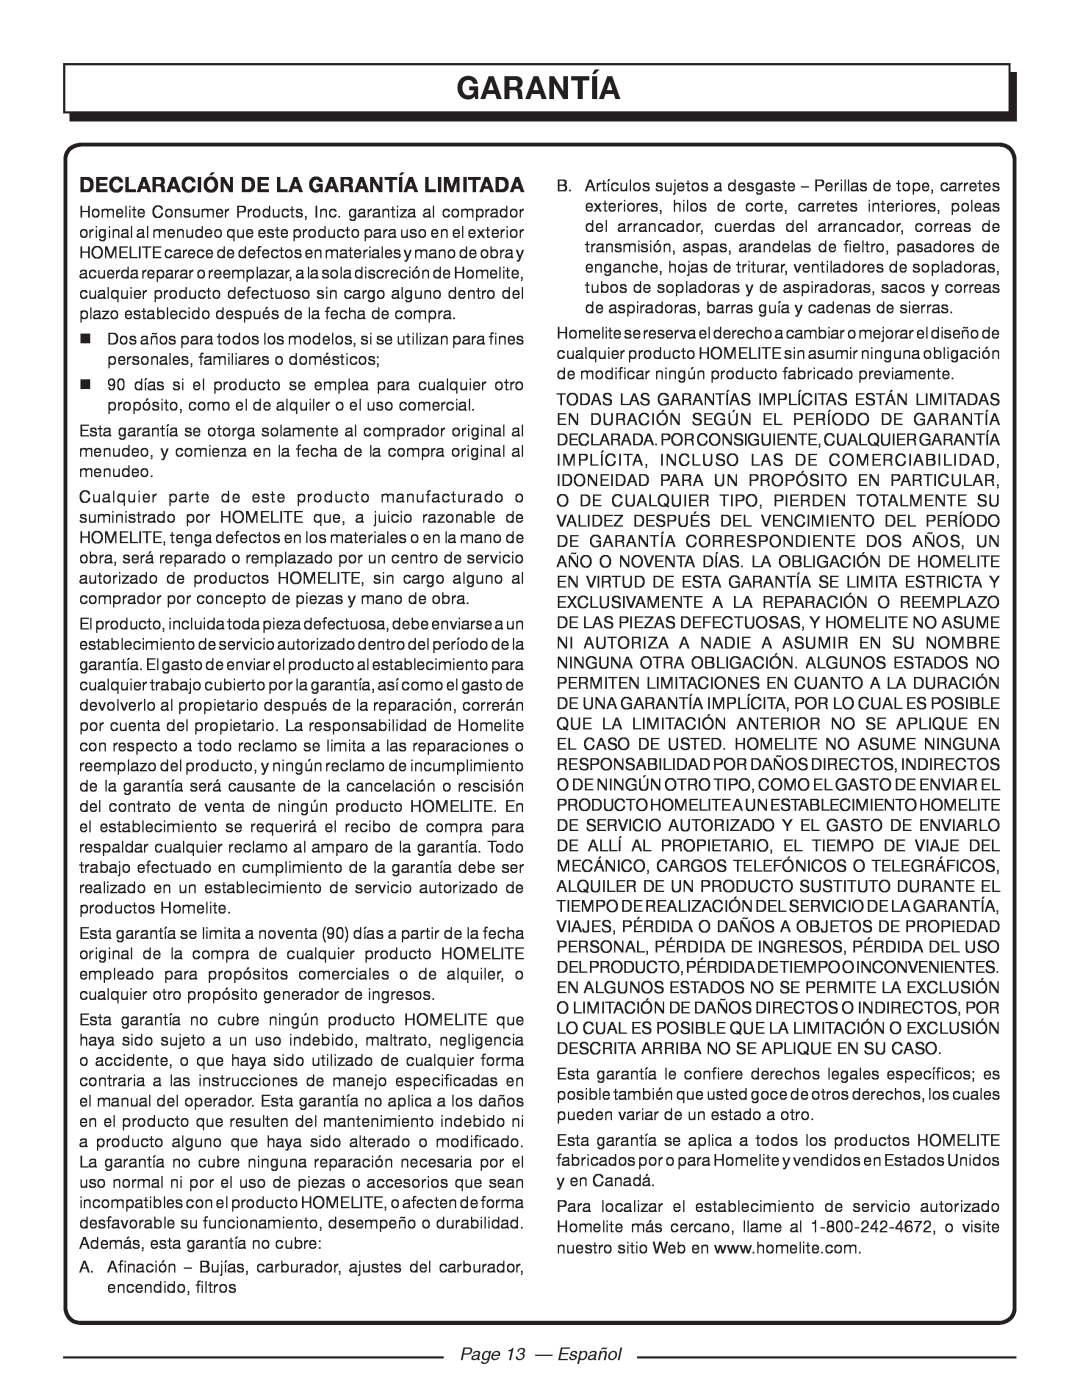 Homelite UT46510 manuel dutilisation garantía, Declaración De La Garantía Limitada, Page 13 - Español 